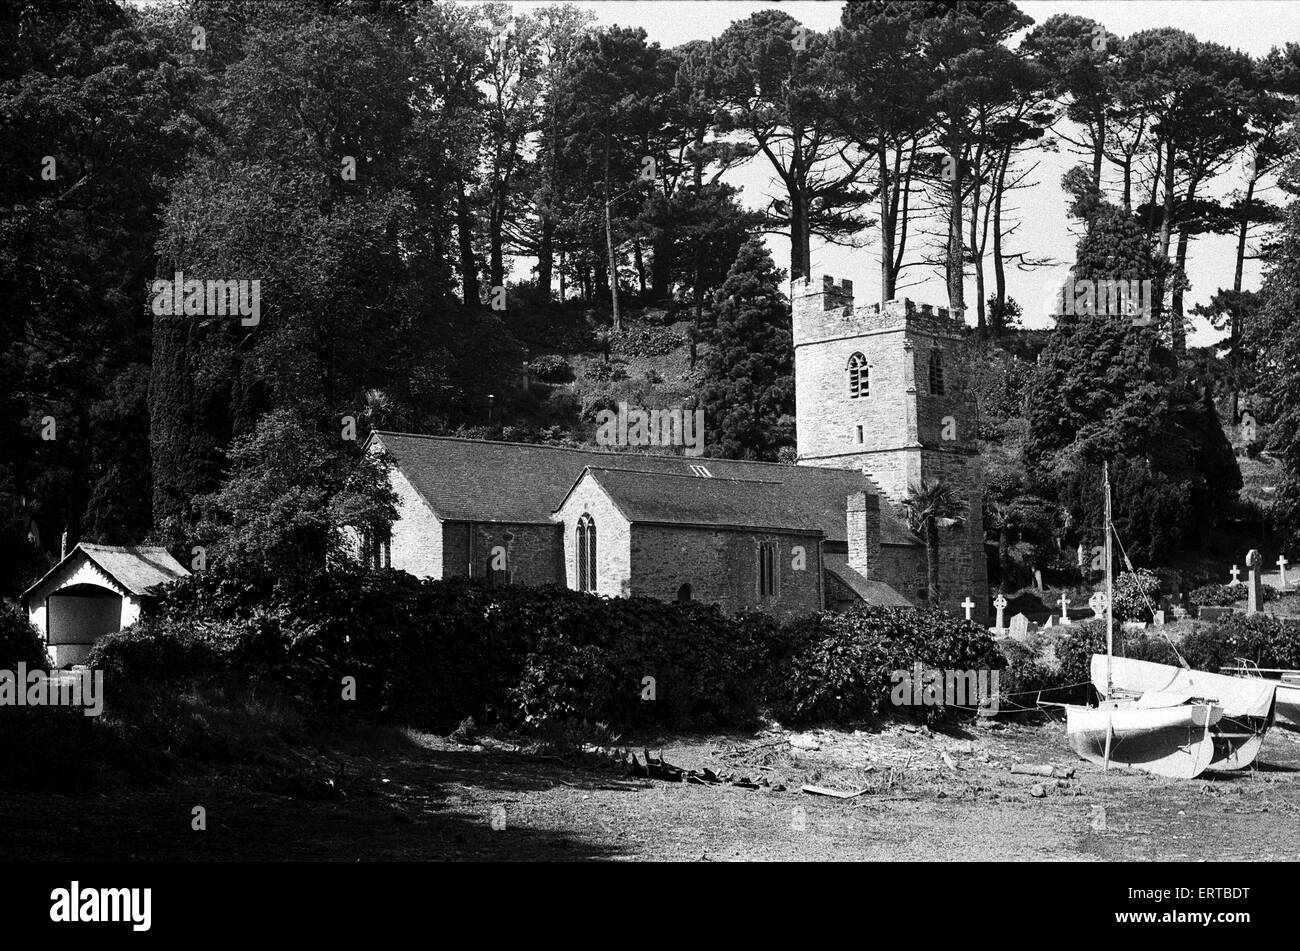 El siglo XIII San Justo en Roseland, en la Iglesia de San Justo en el Roseland, Cornwall. La iglesia se encuentra en Riverside gardens semitropical exuberante plantadas con árboles y arbustos, muchos de los cuales son especies raras en Inglaterra. El pueblo está situado a 6 millas (10 km) al sur de Truro y a dos millas (3 km) al norte de St Mawes. De junio de 1975. Foto de stock